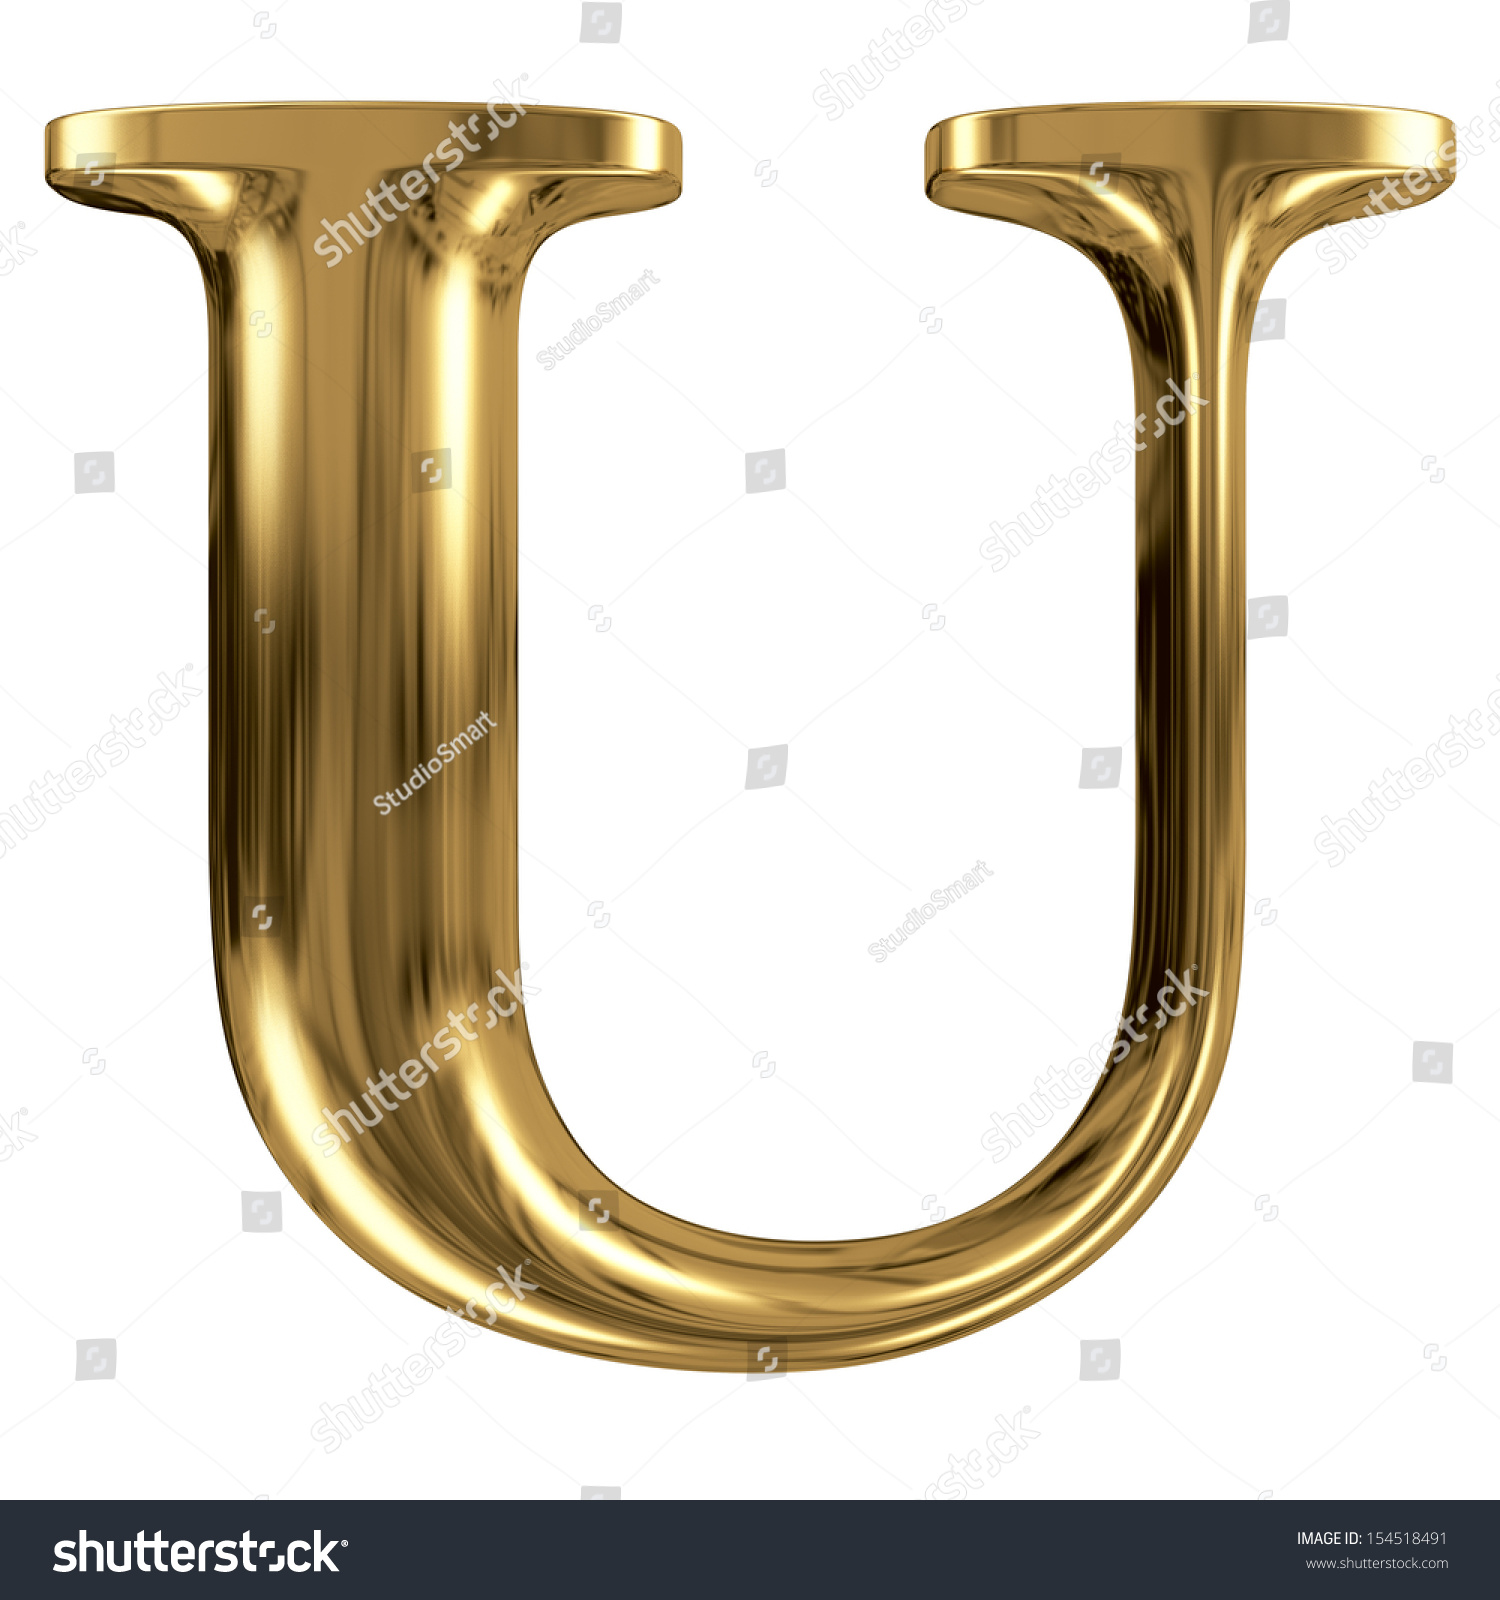 Golden Font Type Letter U Uppercase Stock Photo 154518491 Shutterstock